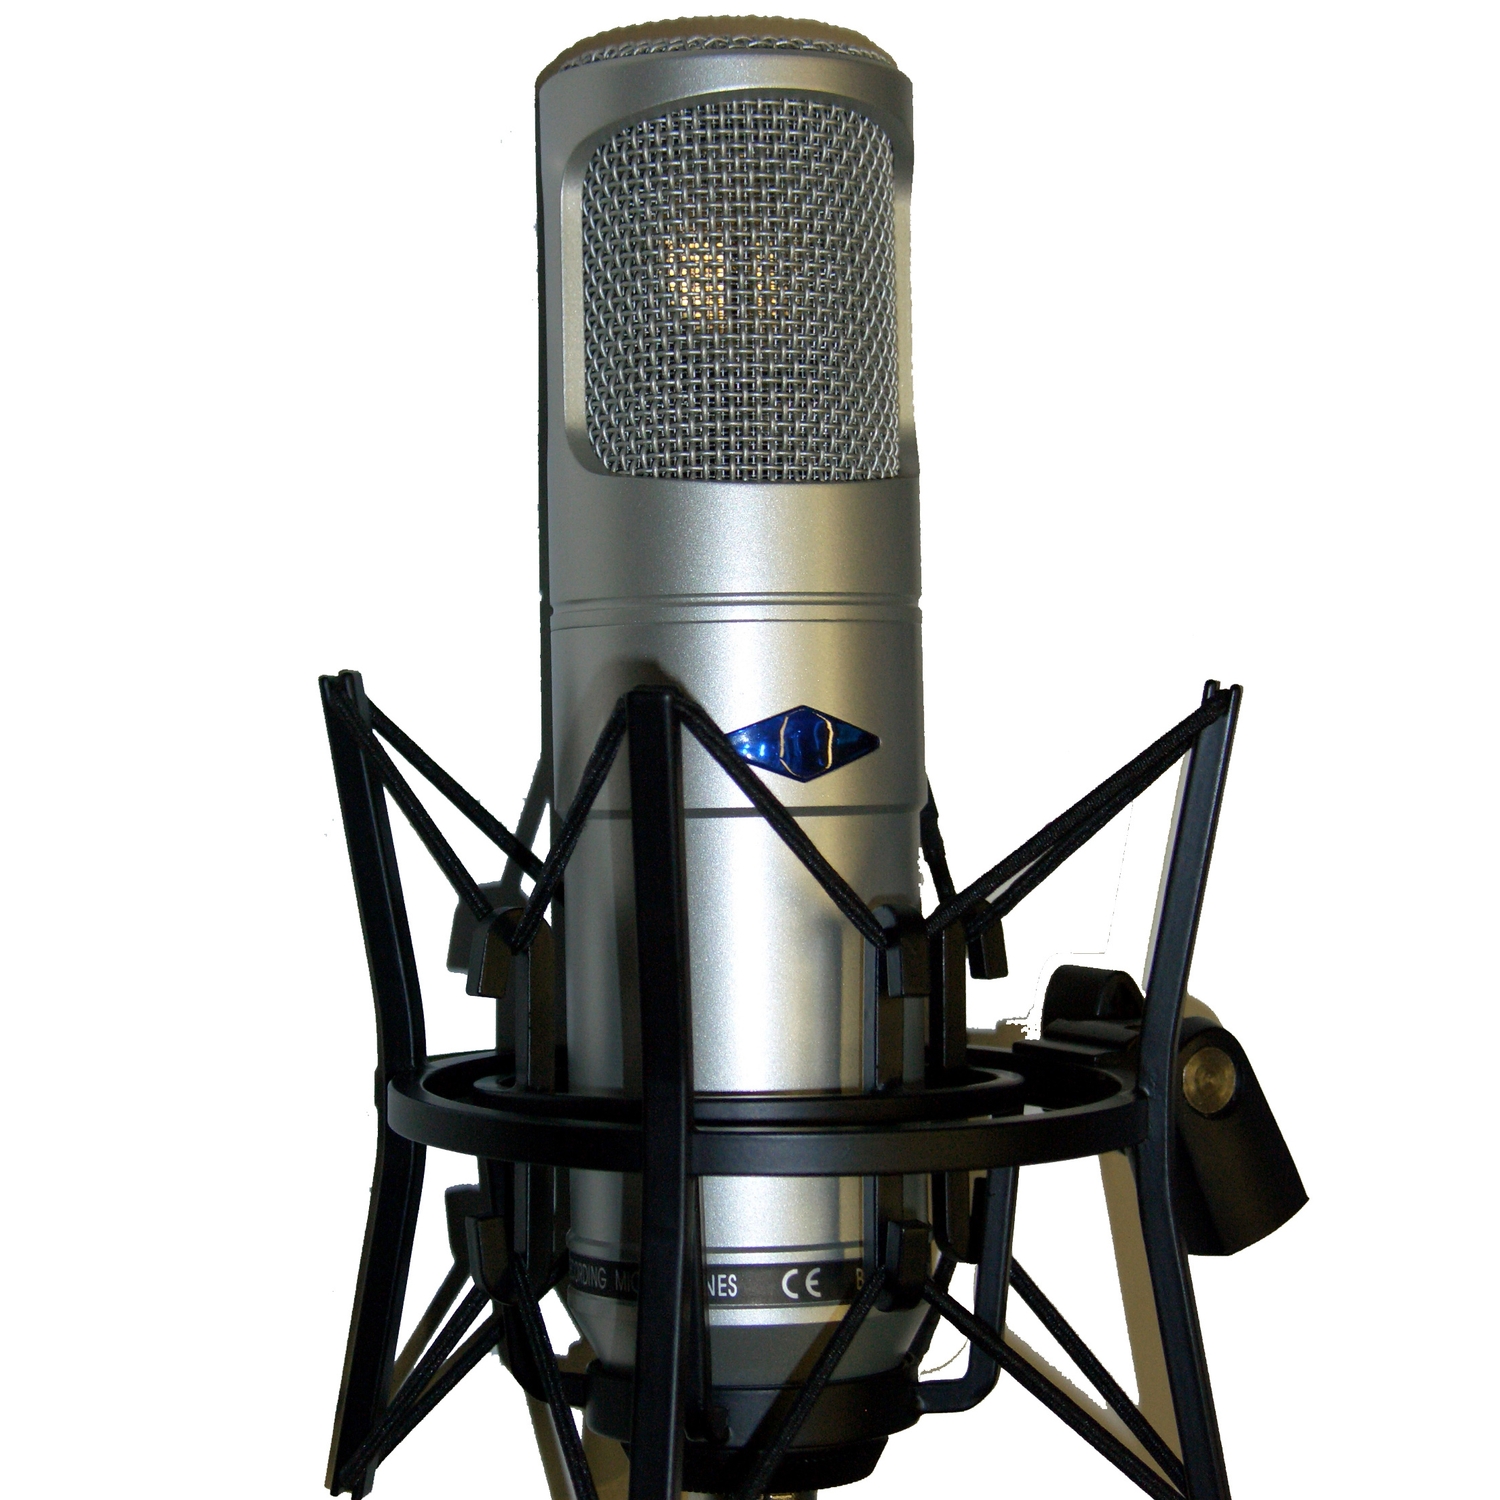 Профессиональный ламповый студийный конденсаторный микрофон Invotone CM400L